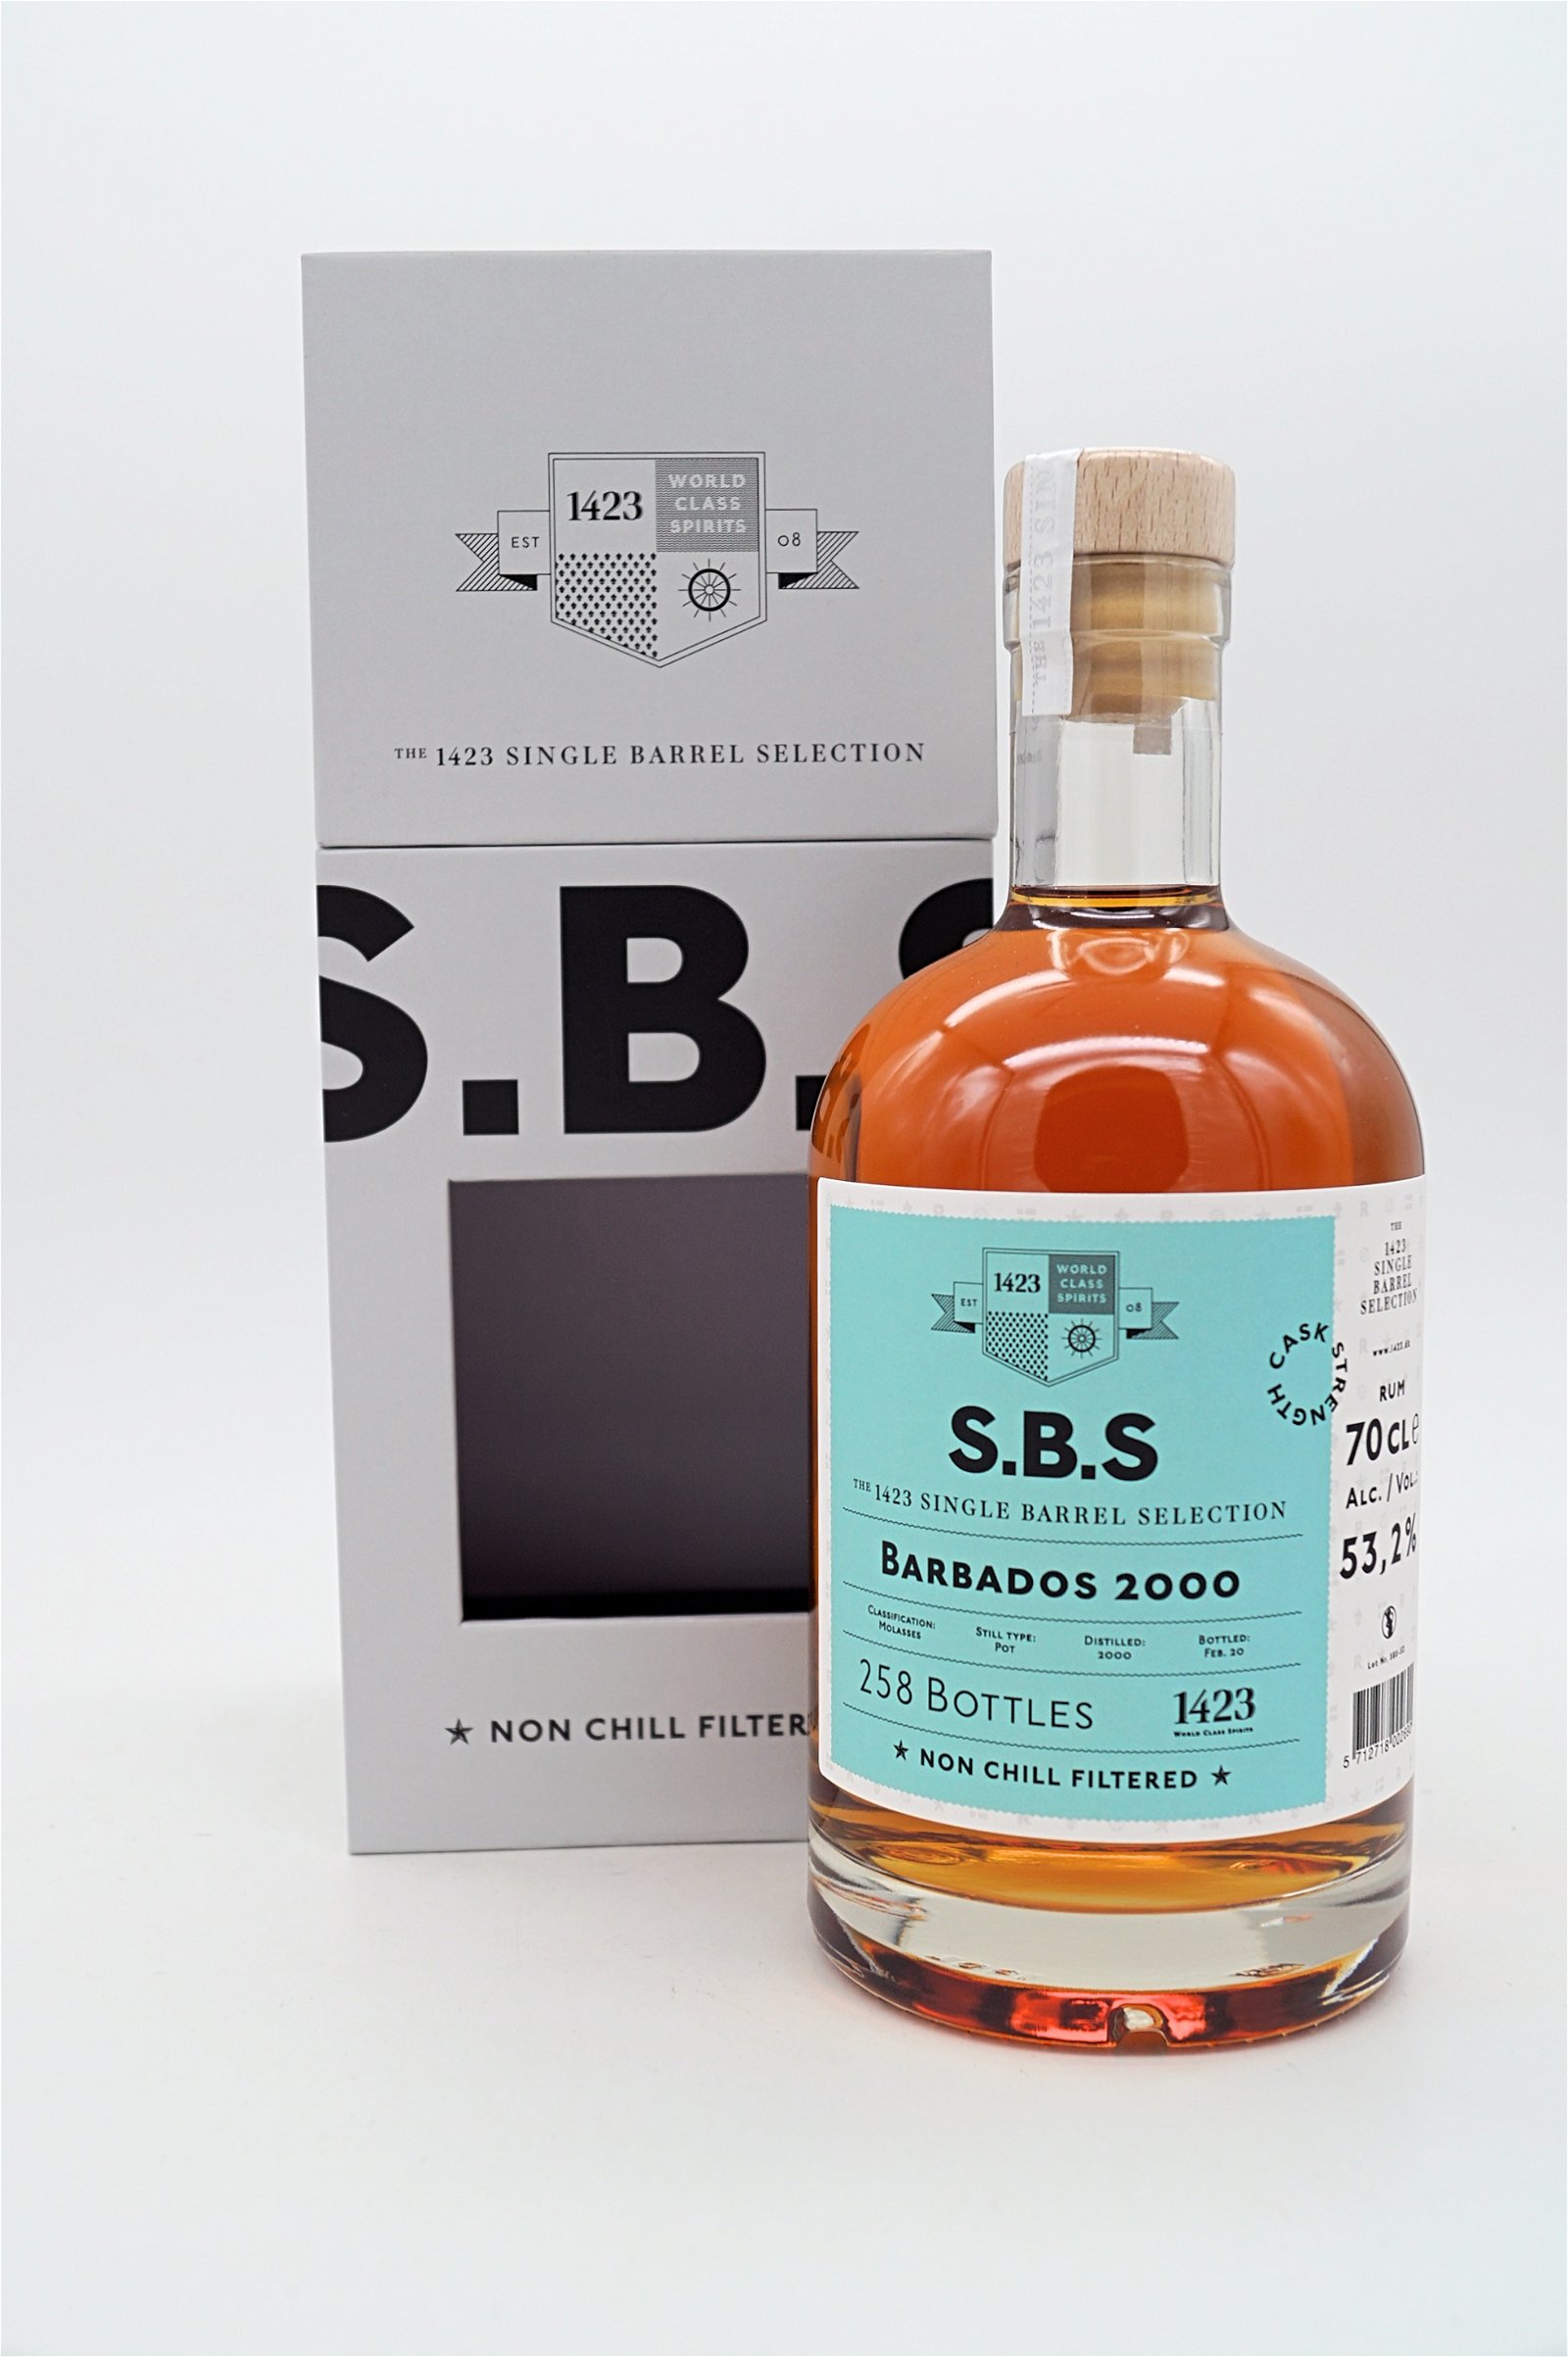 SBS Barbados 2000 Single Barrel Selection Rum